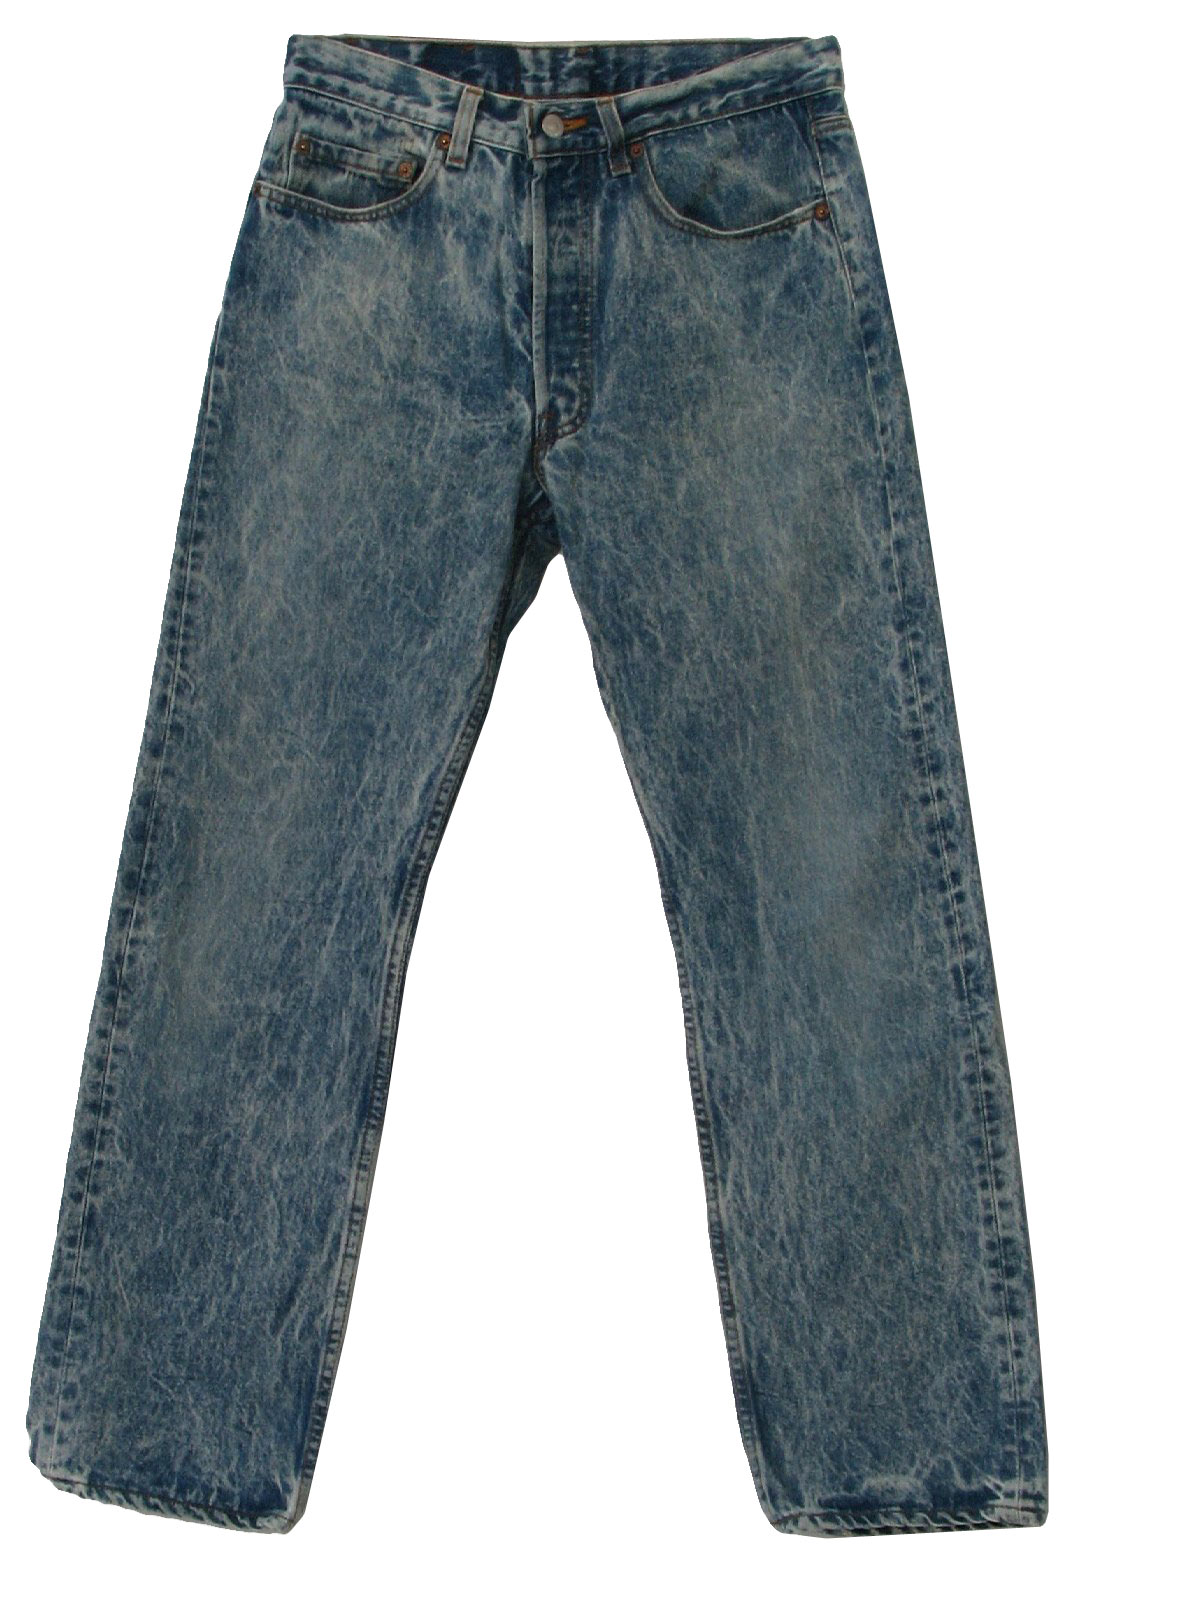 Retro 80's Pants: 80s -Levis- Mens blue acid washed cotton denim ...